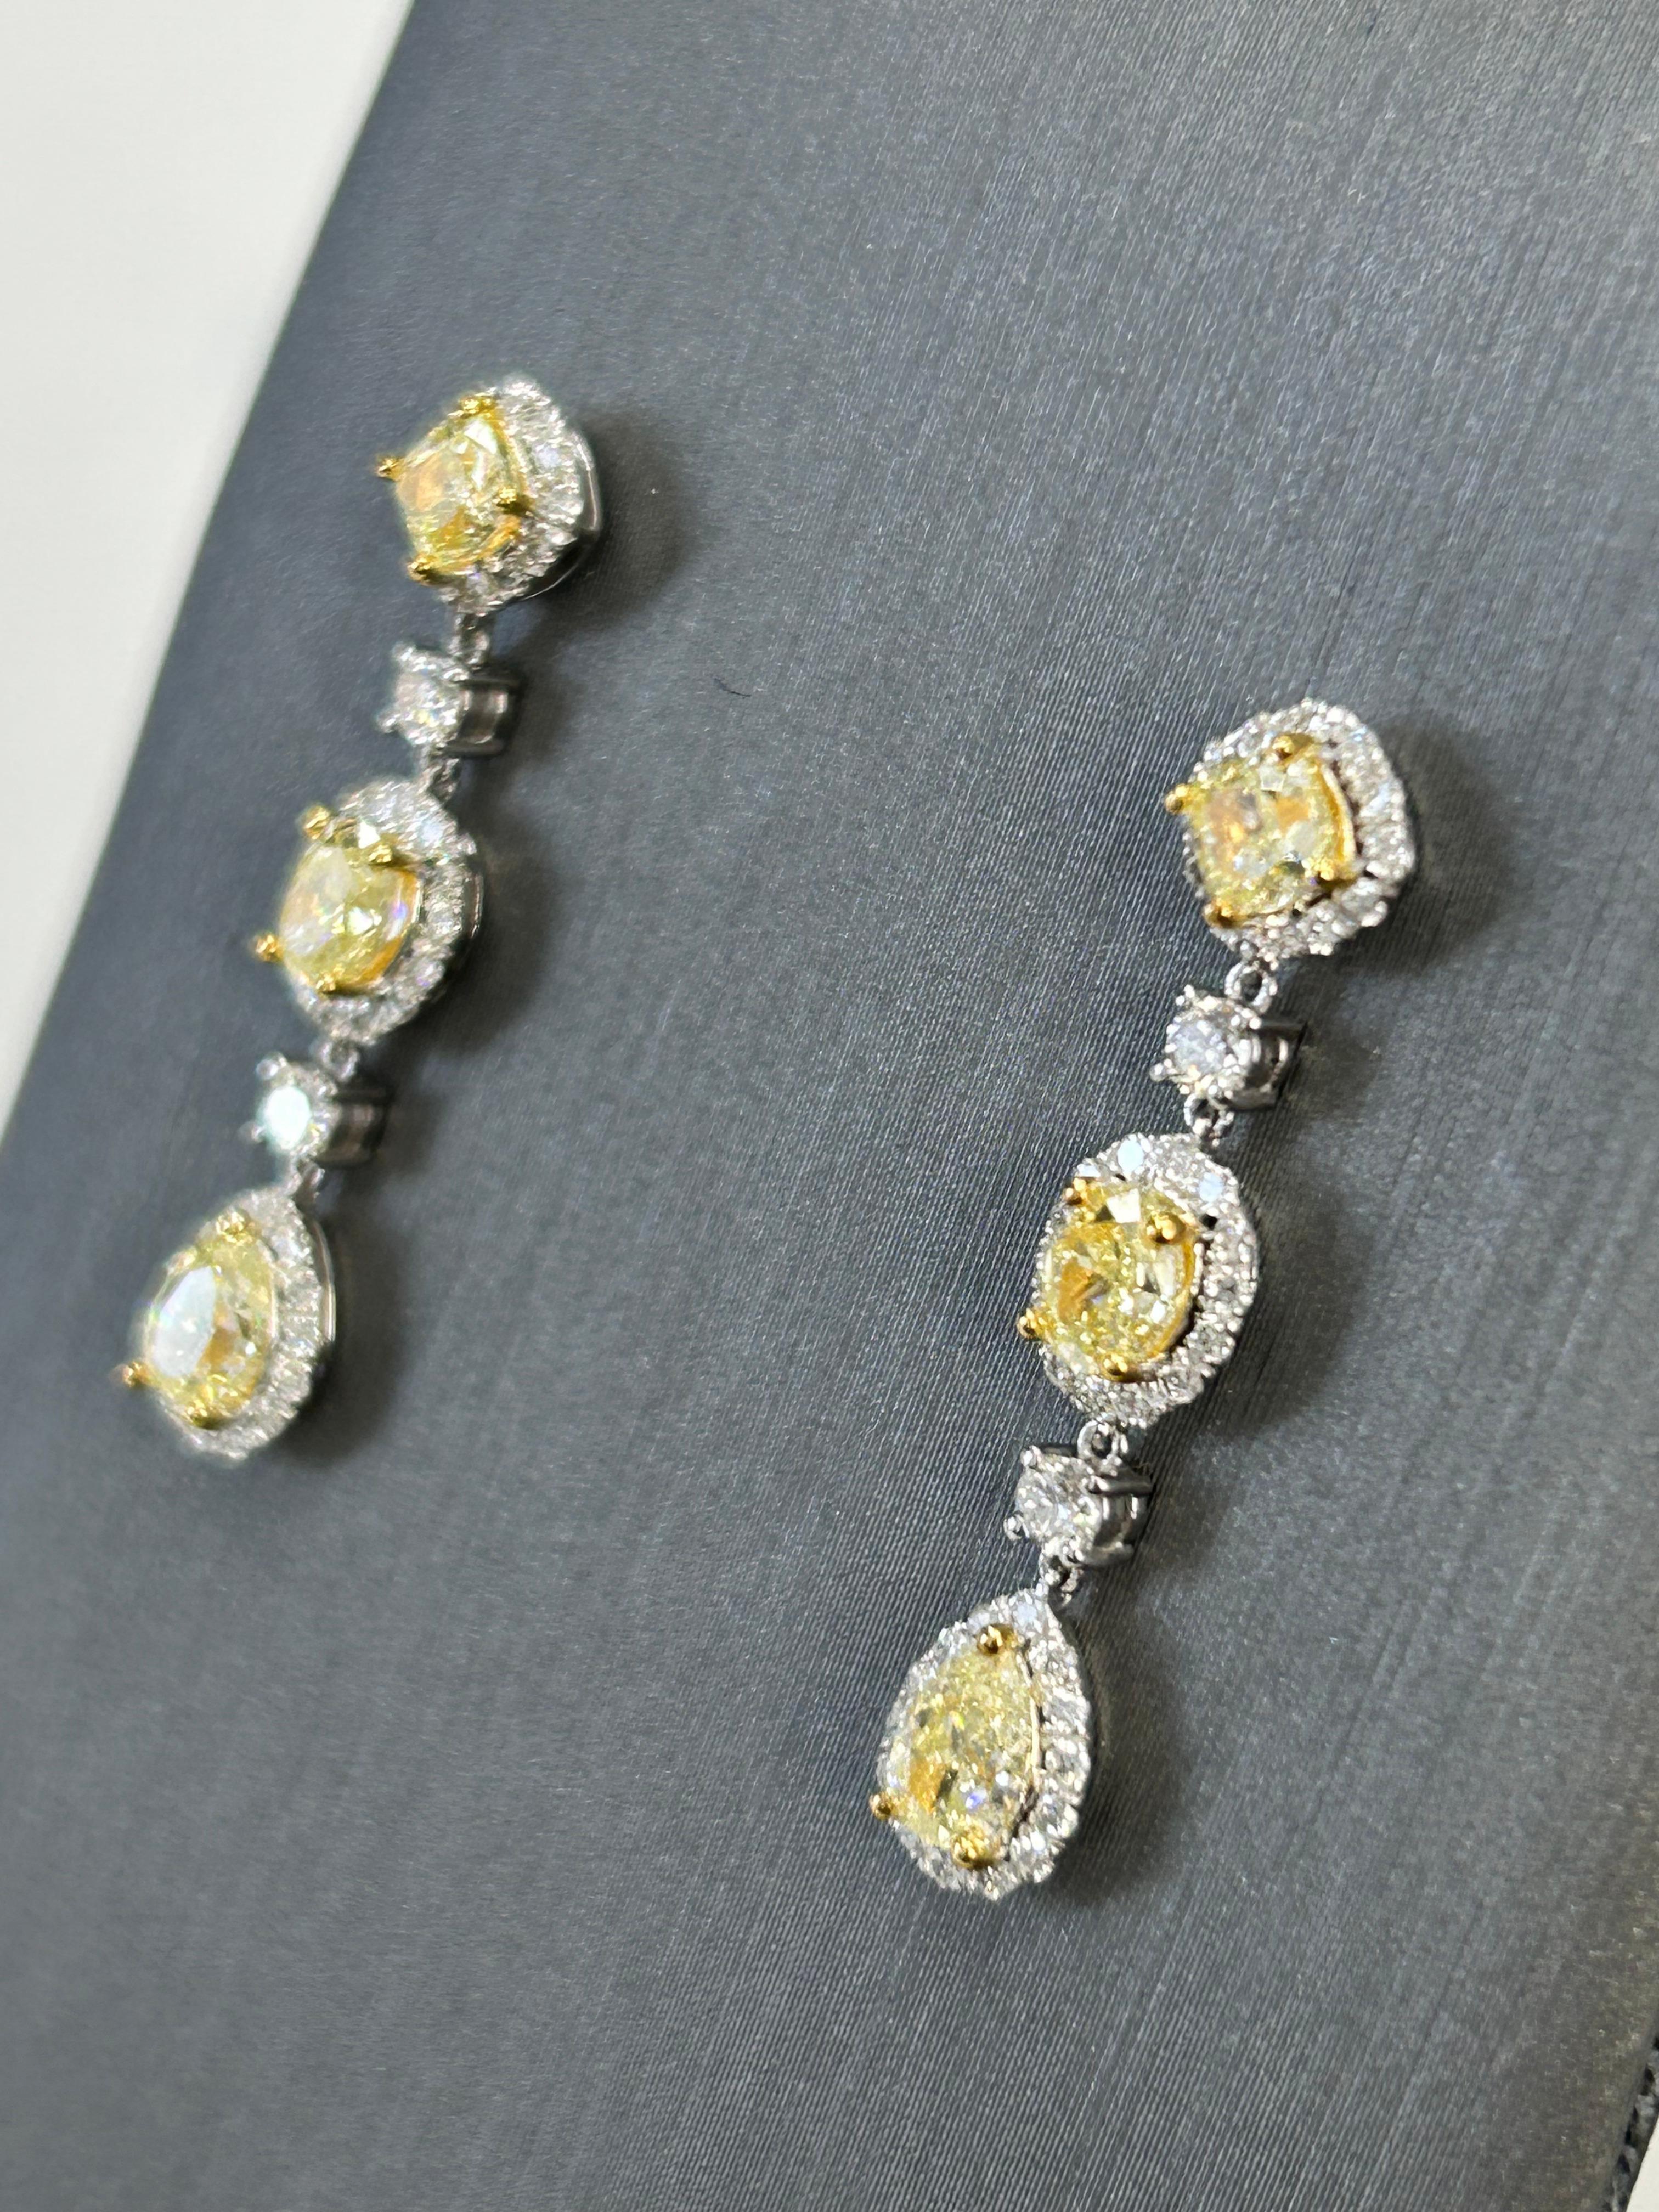 Ces Luscious Lemon™️ Dangle earrings (boucles d'oreilles pendantes) ont 3 formes différentes : Coussin, Ovale, et Poire avec un magnifique halo blanc melee pour élever la bonté jaune citron. Les boucles d'oreilles ont une valeur de 2,00 cts et sont